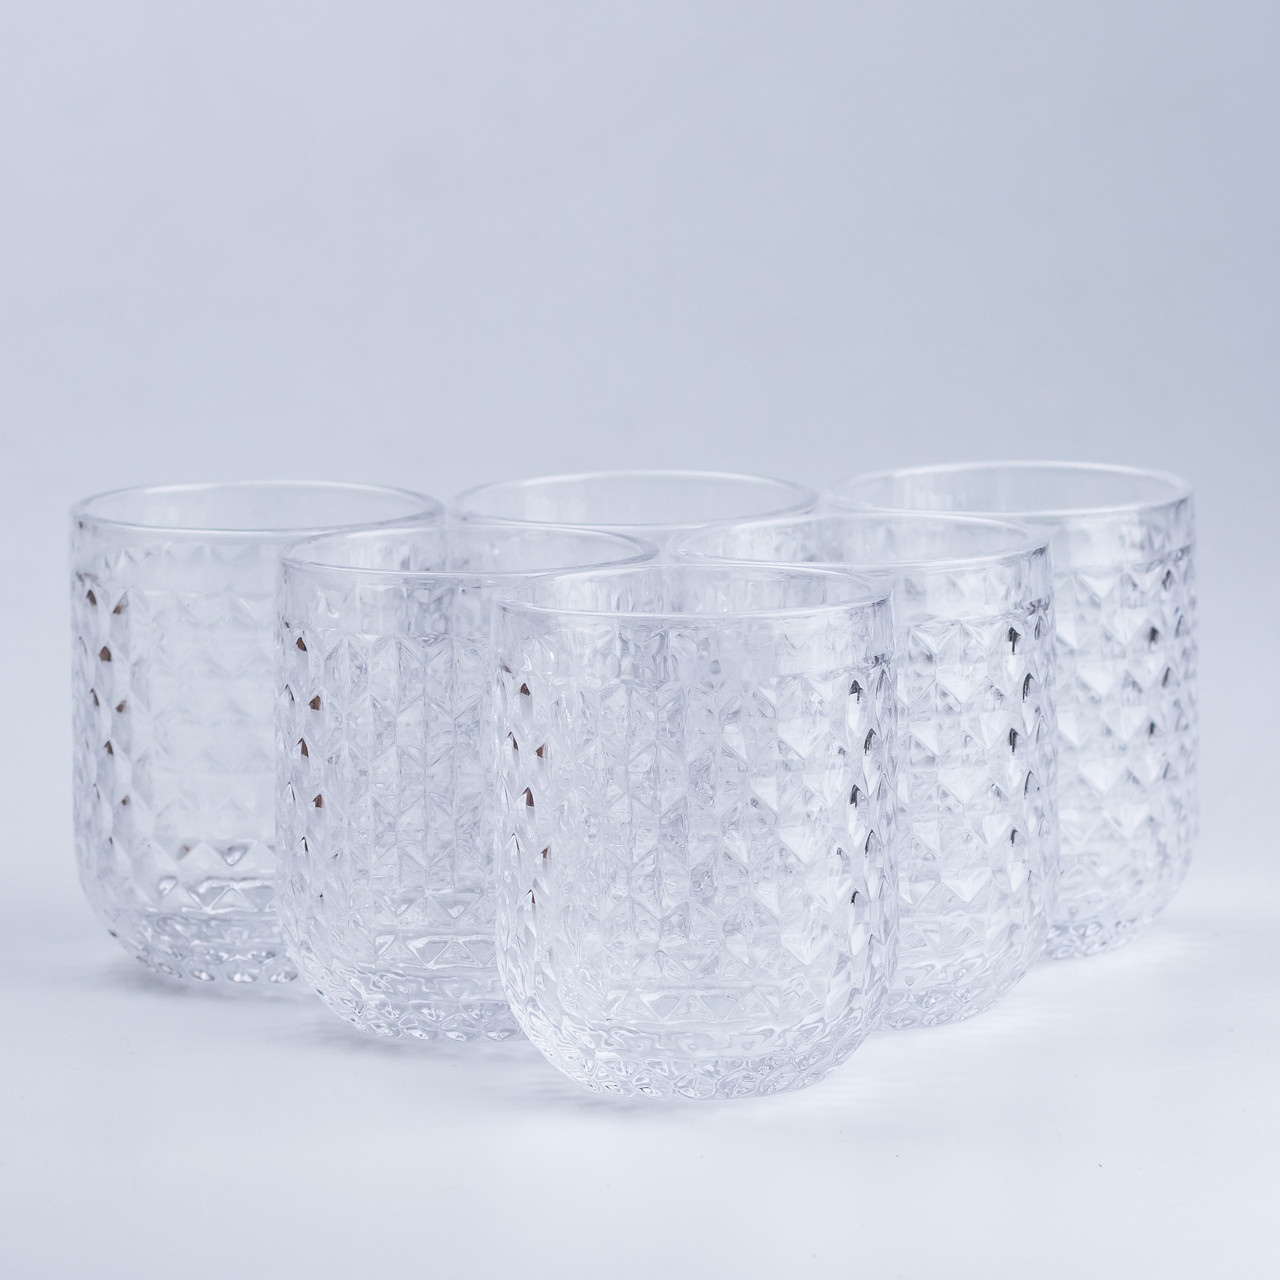 Набір склянок фігурних під кришталь 6 шт. по 300 мл із товстого скла, стильний комплект склянок на подарунок